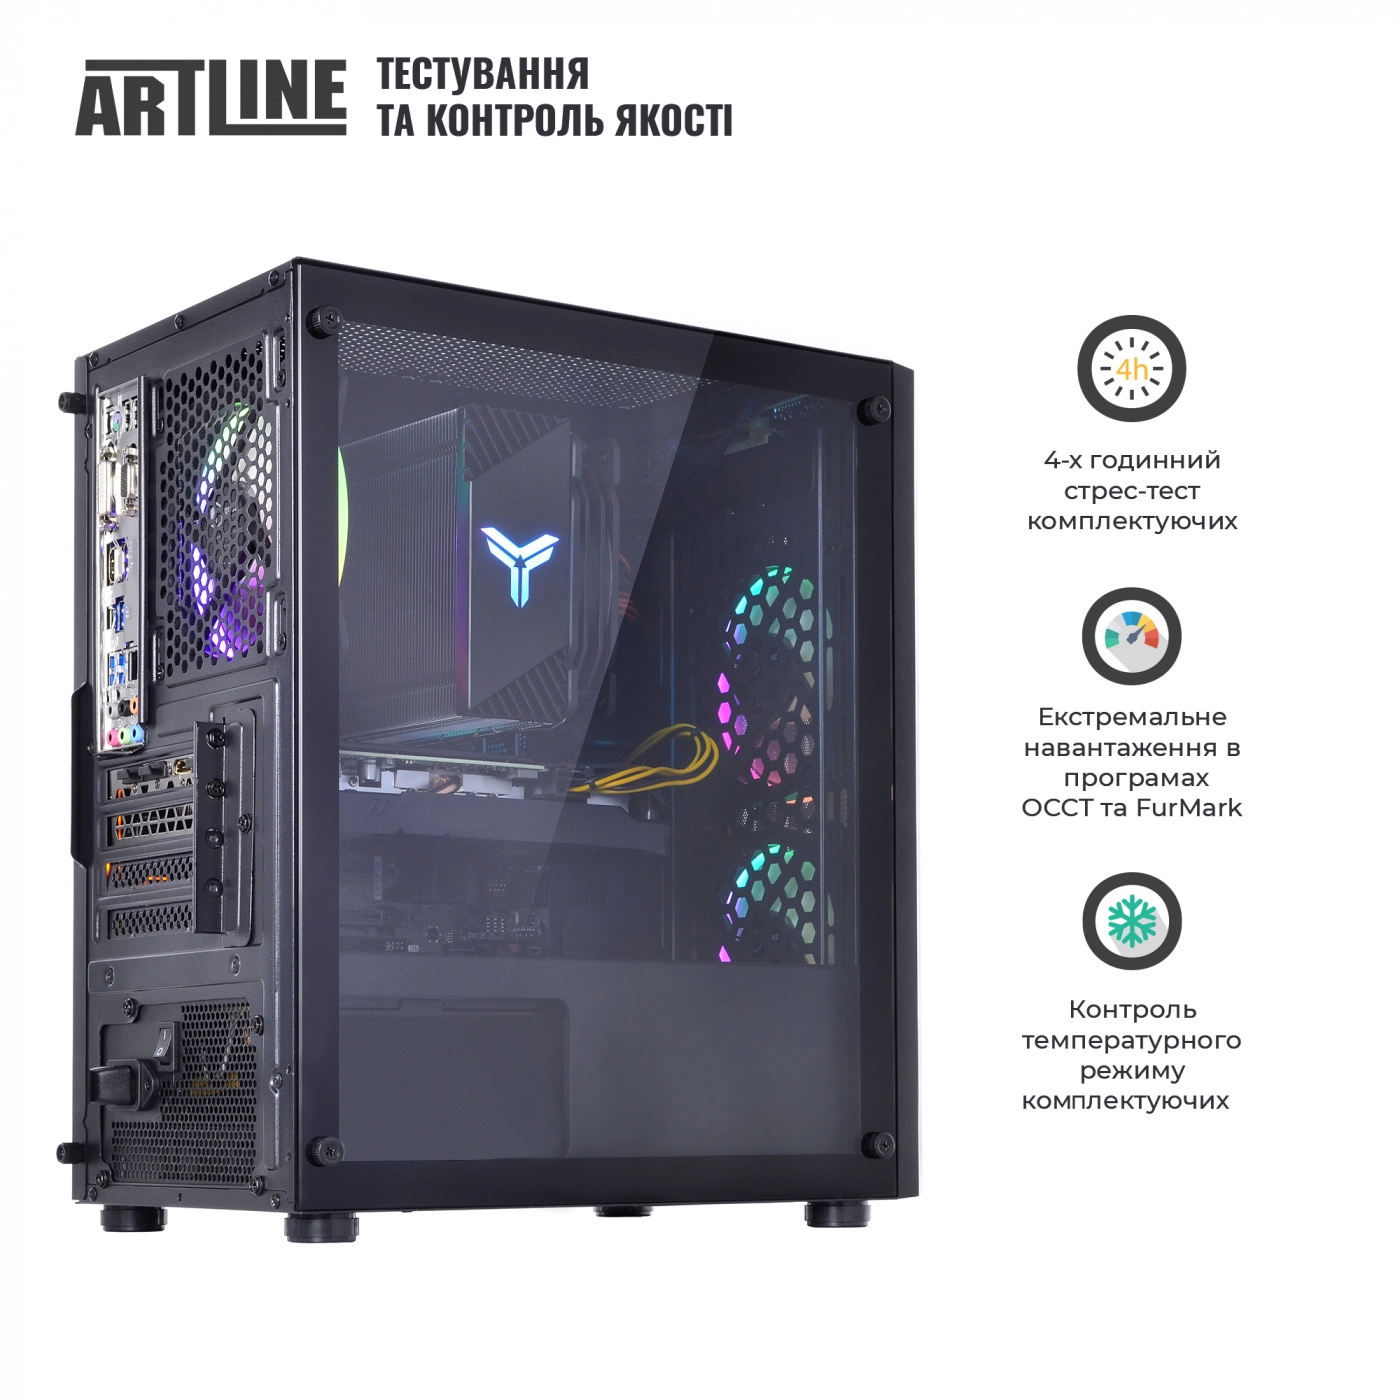 Купить Компьютер ARTLINE Gaming X71v26 - фото 8